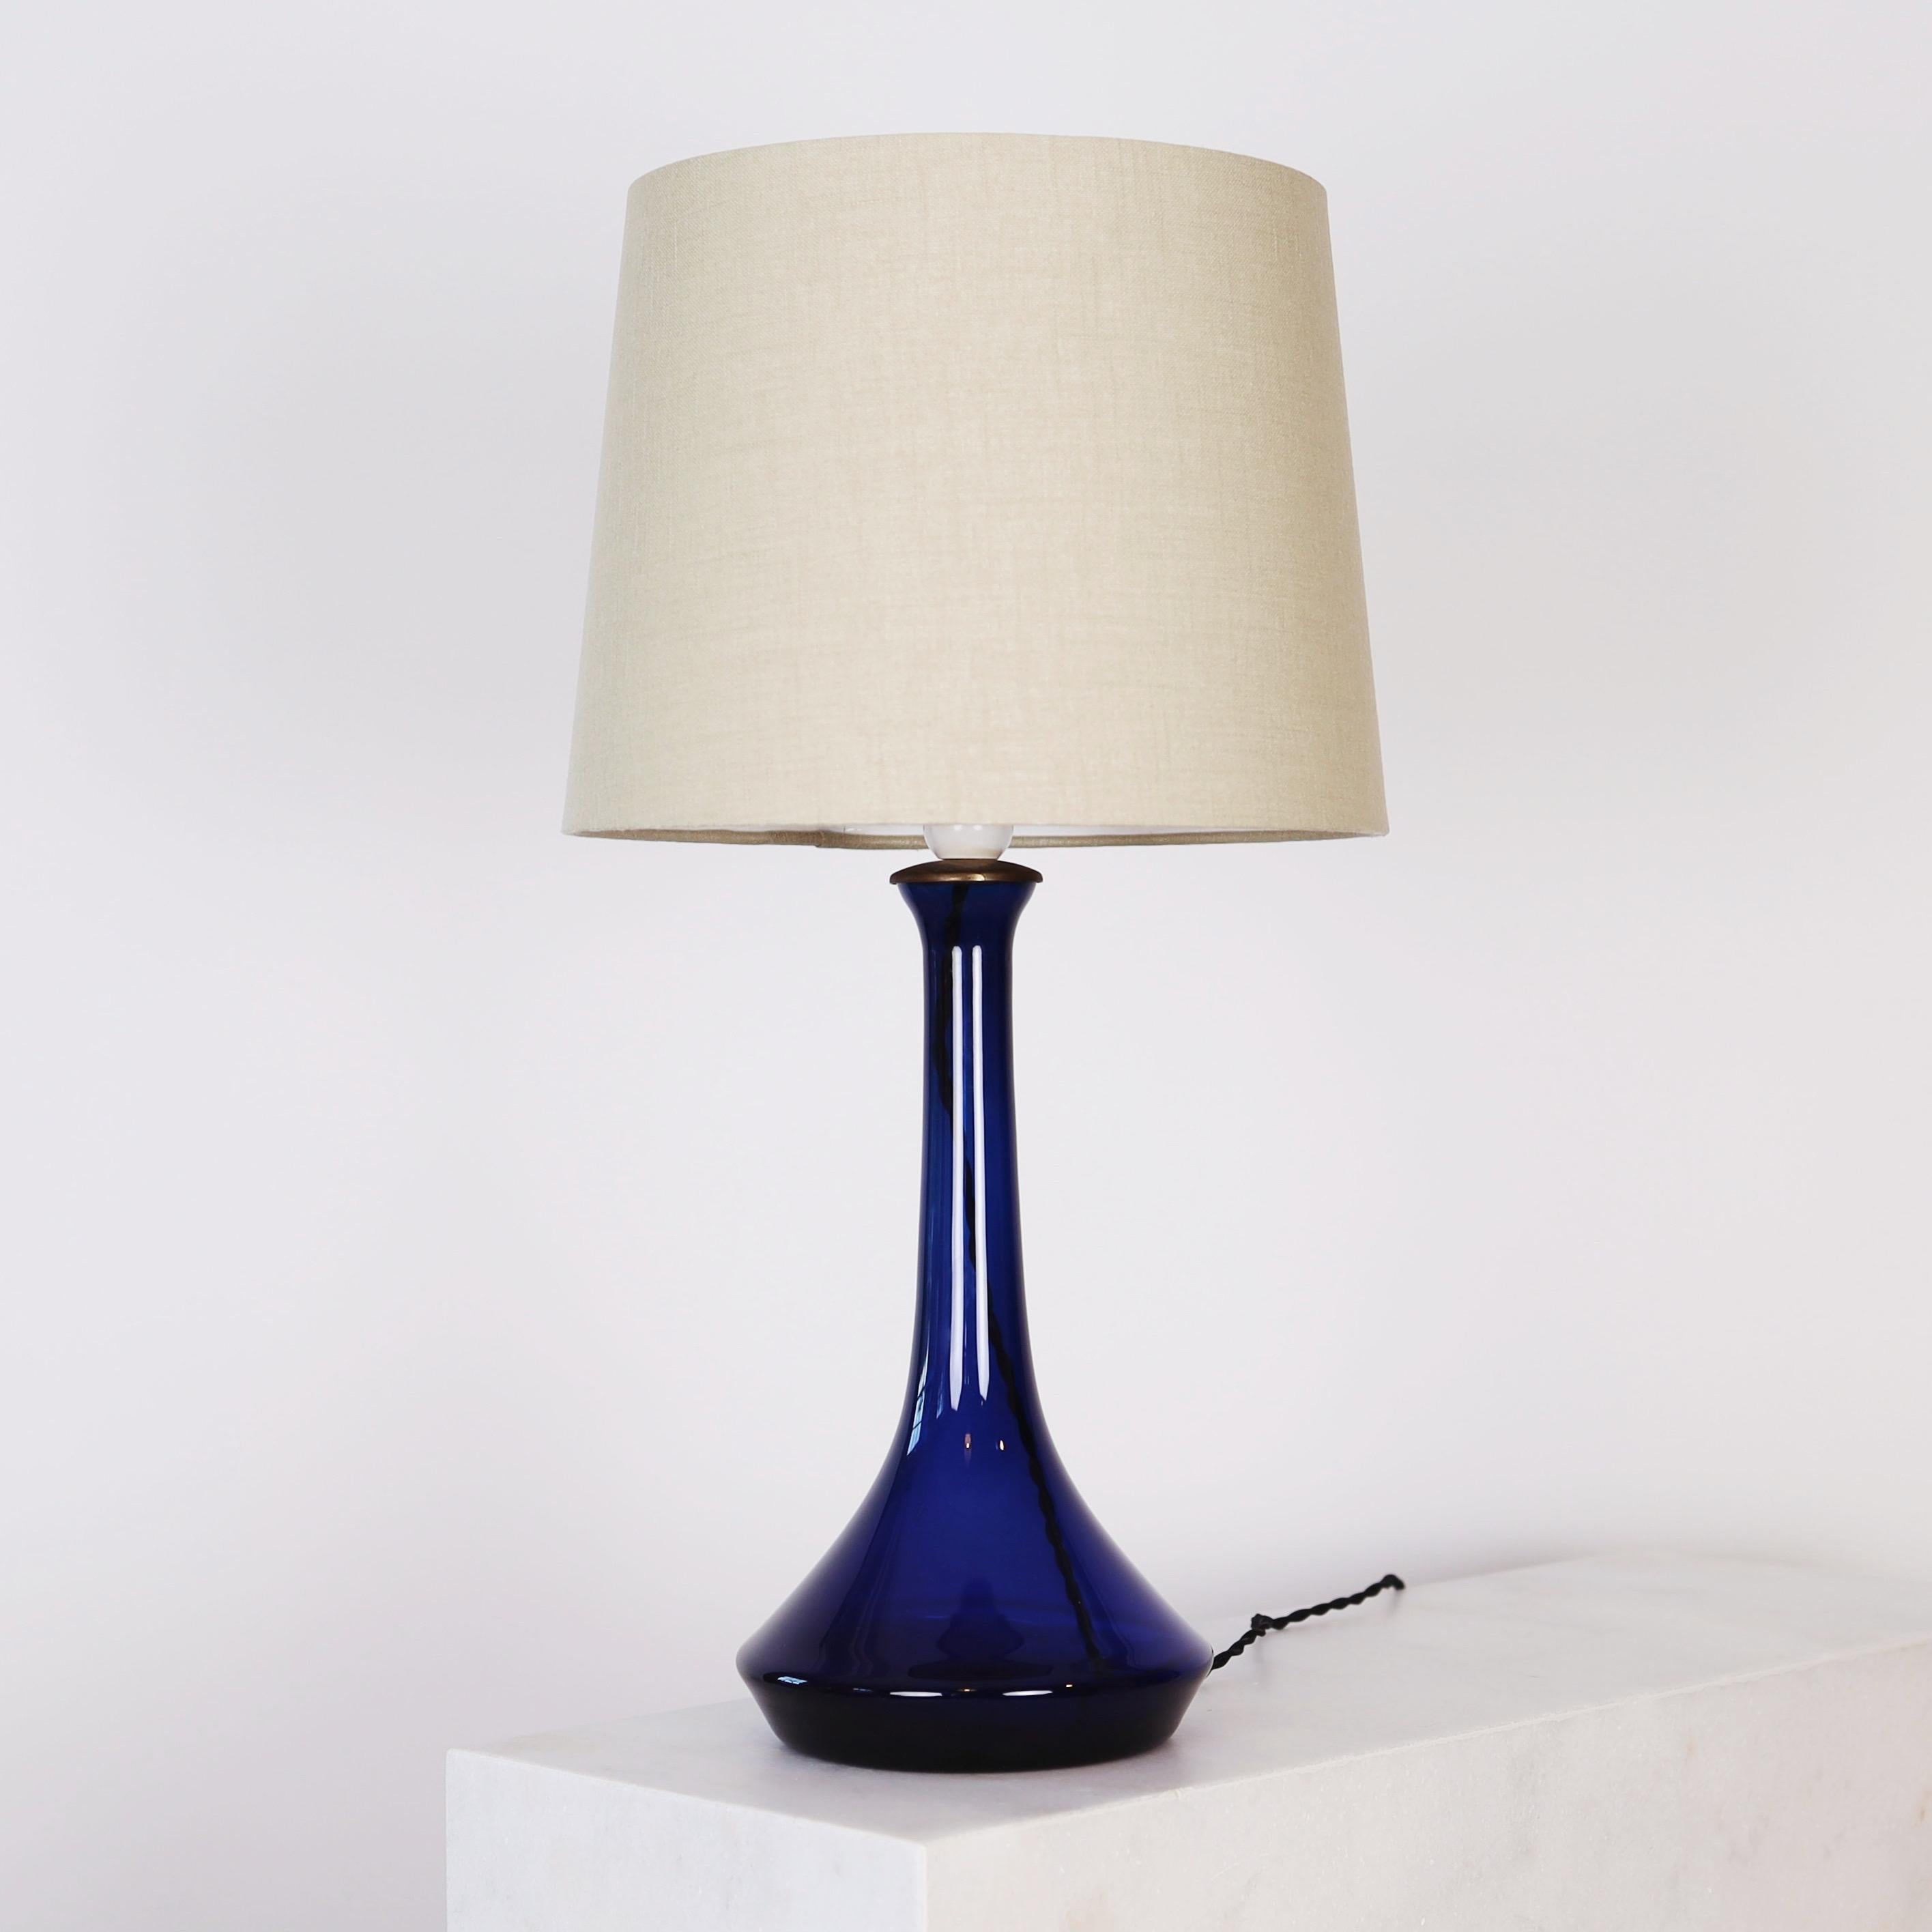 Lampe de bureau en verre bleu foncé conçue par Lisbeth Brams en 1966 pour Fog & Mørup. Cette pièce accrocheuse est l'une des trois pièces de son trio pour Fog & Mørup. Nous avons le Trio disponible. 

* Lampe de table en verre bleu foncé avec un